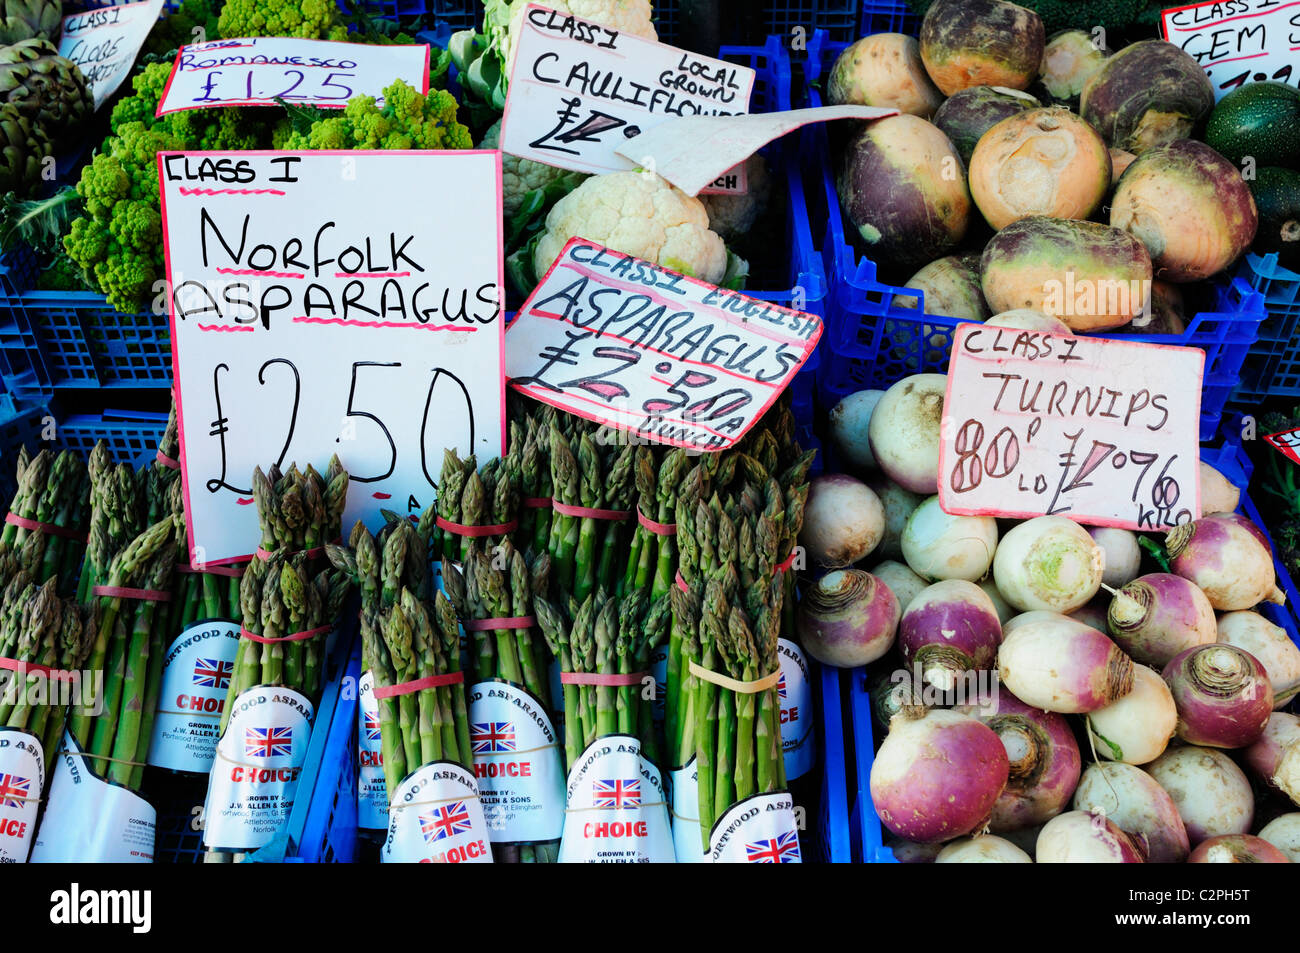 Kiosque de légumes aux asperges et navets sur le marché, Cambridge, England, UK Banque D'Images